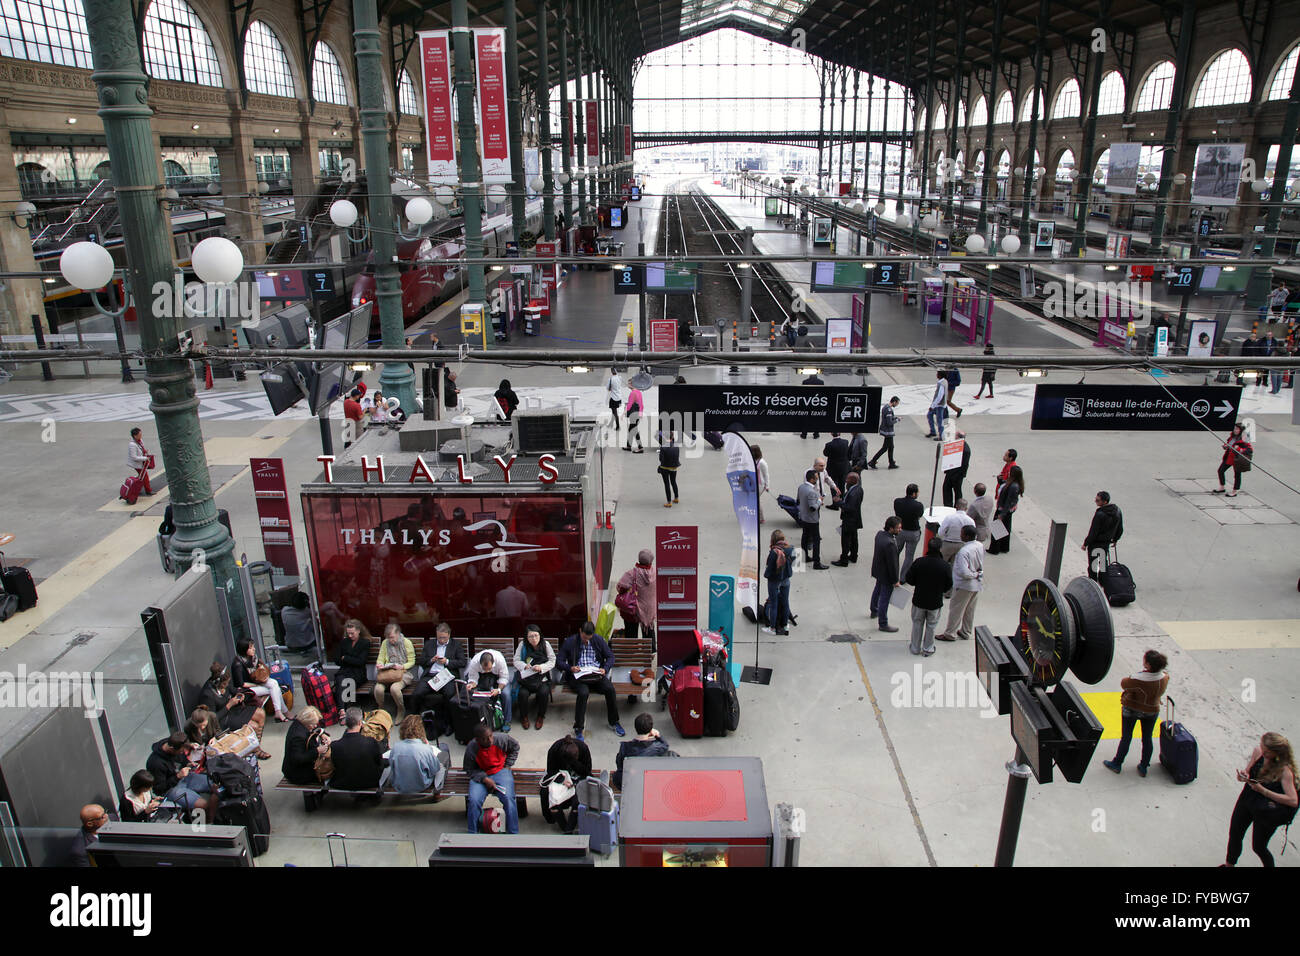 Gare du nord paris Banque de photographies et d'images à haute résolution -  Alamy